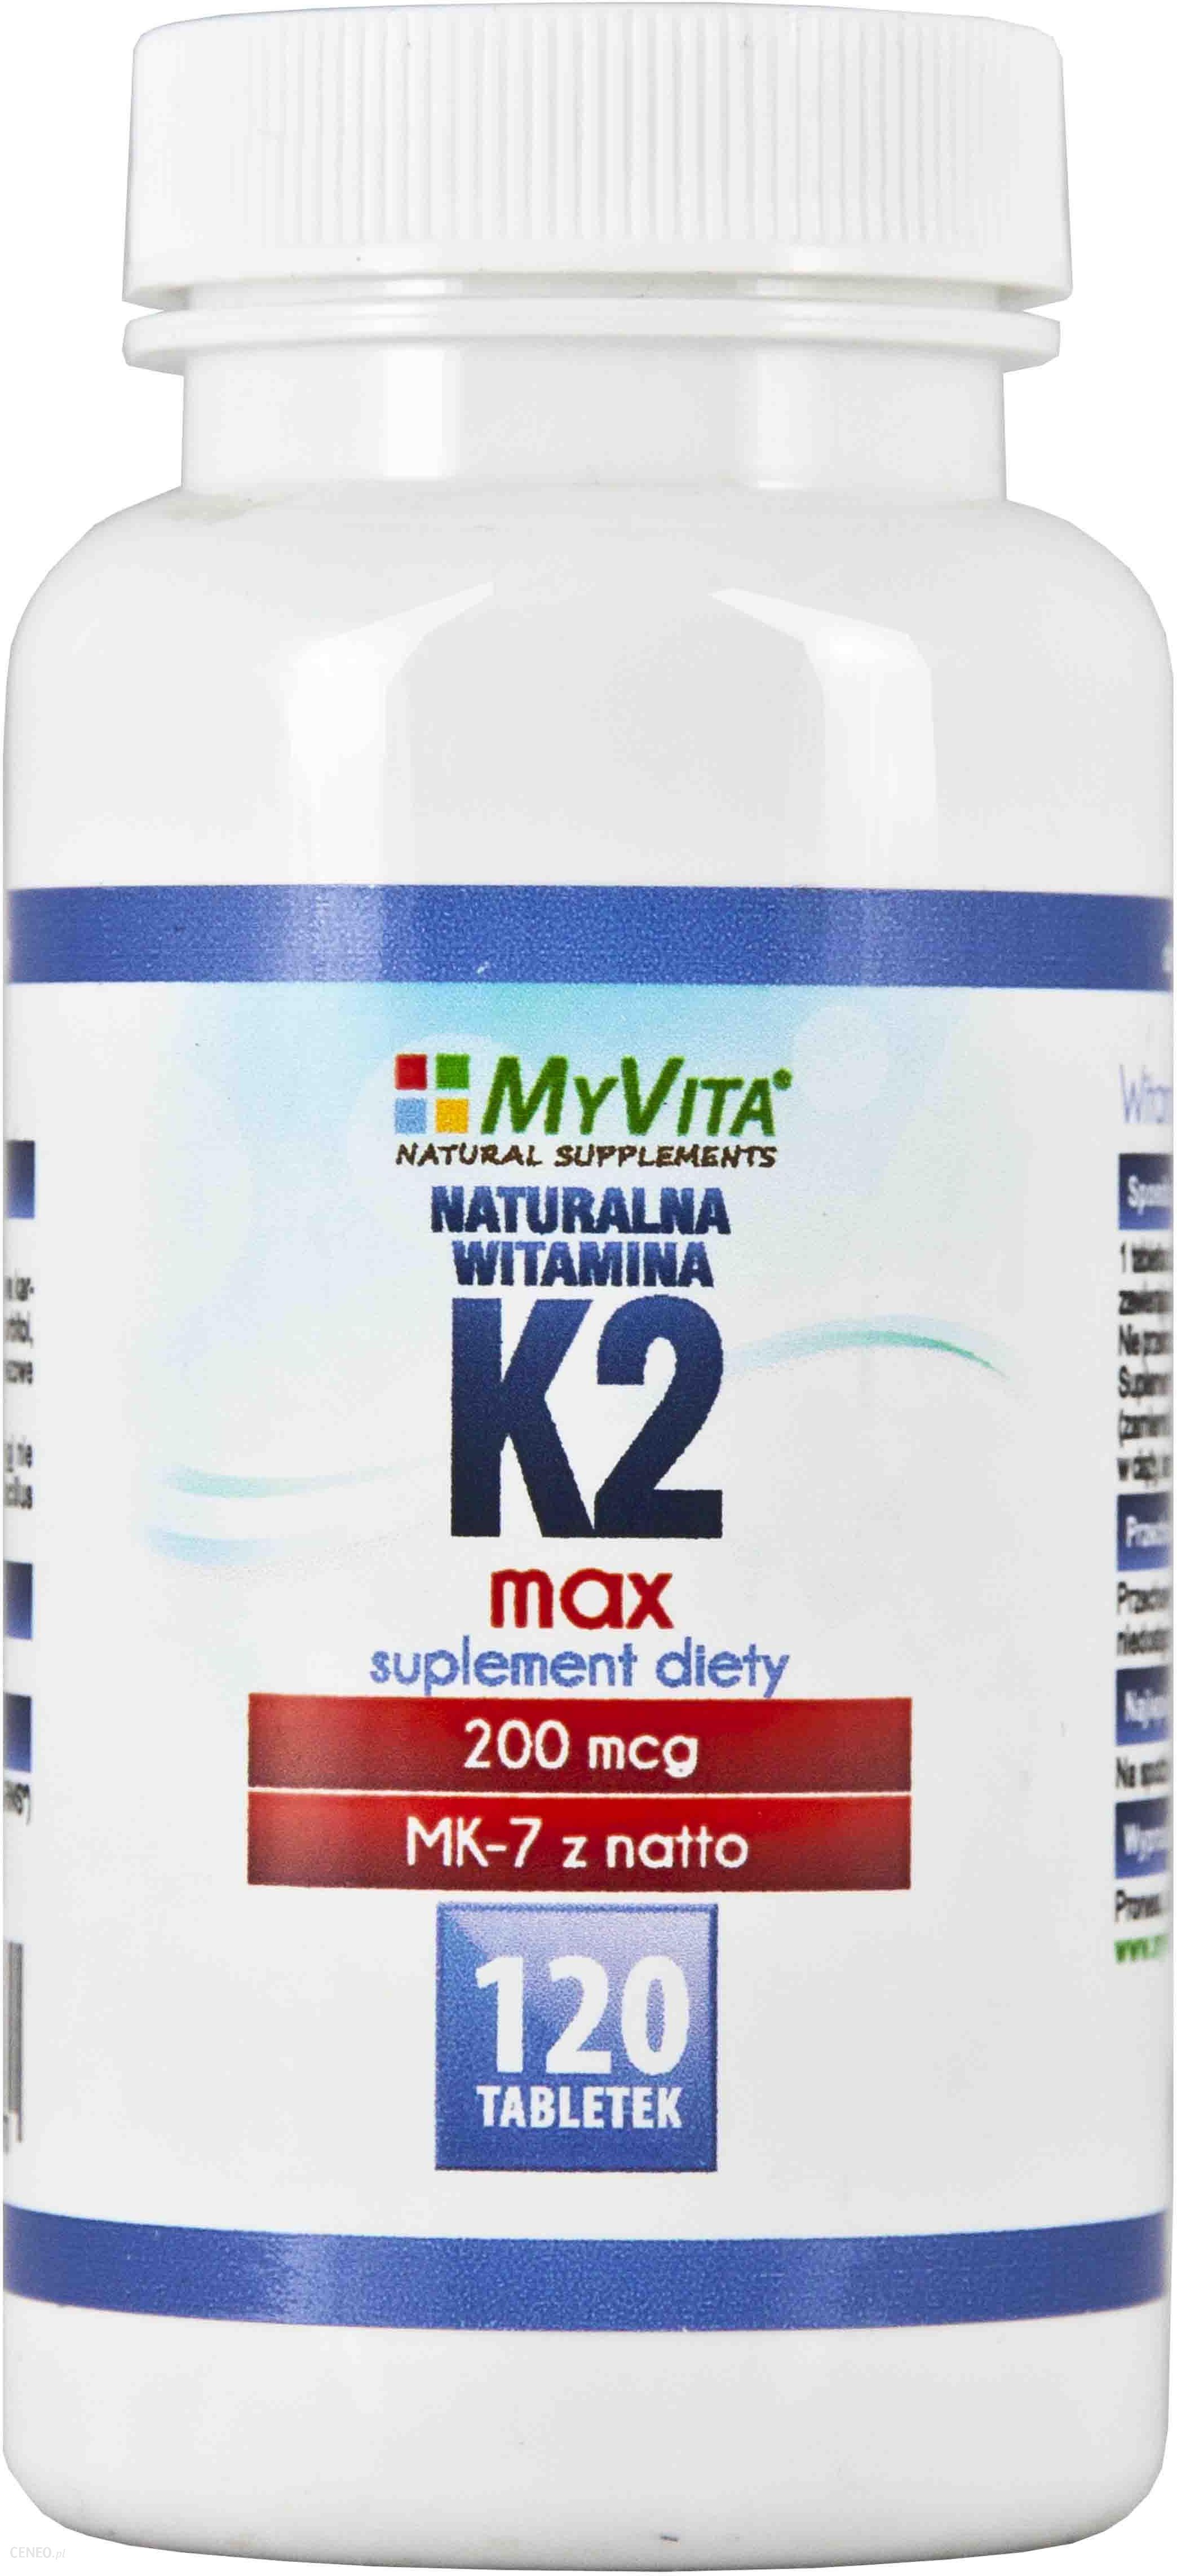 Myvita Naturalna Witamina K2 Mk 7 Max 200mcg 120 Tabletek Opinie I Ceny Na Ceneopl